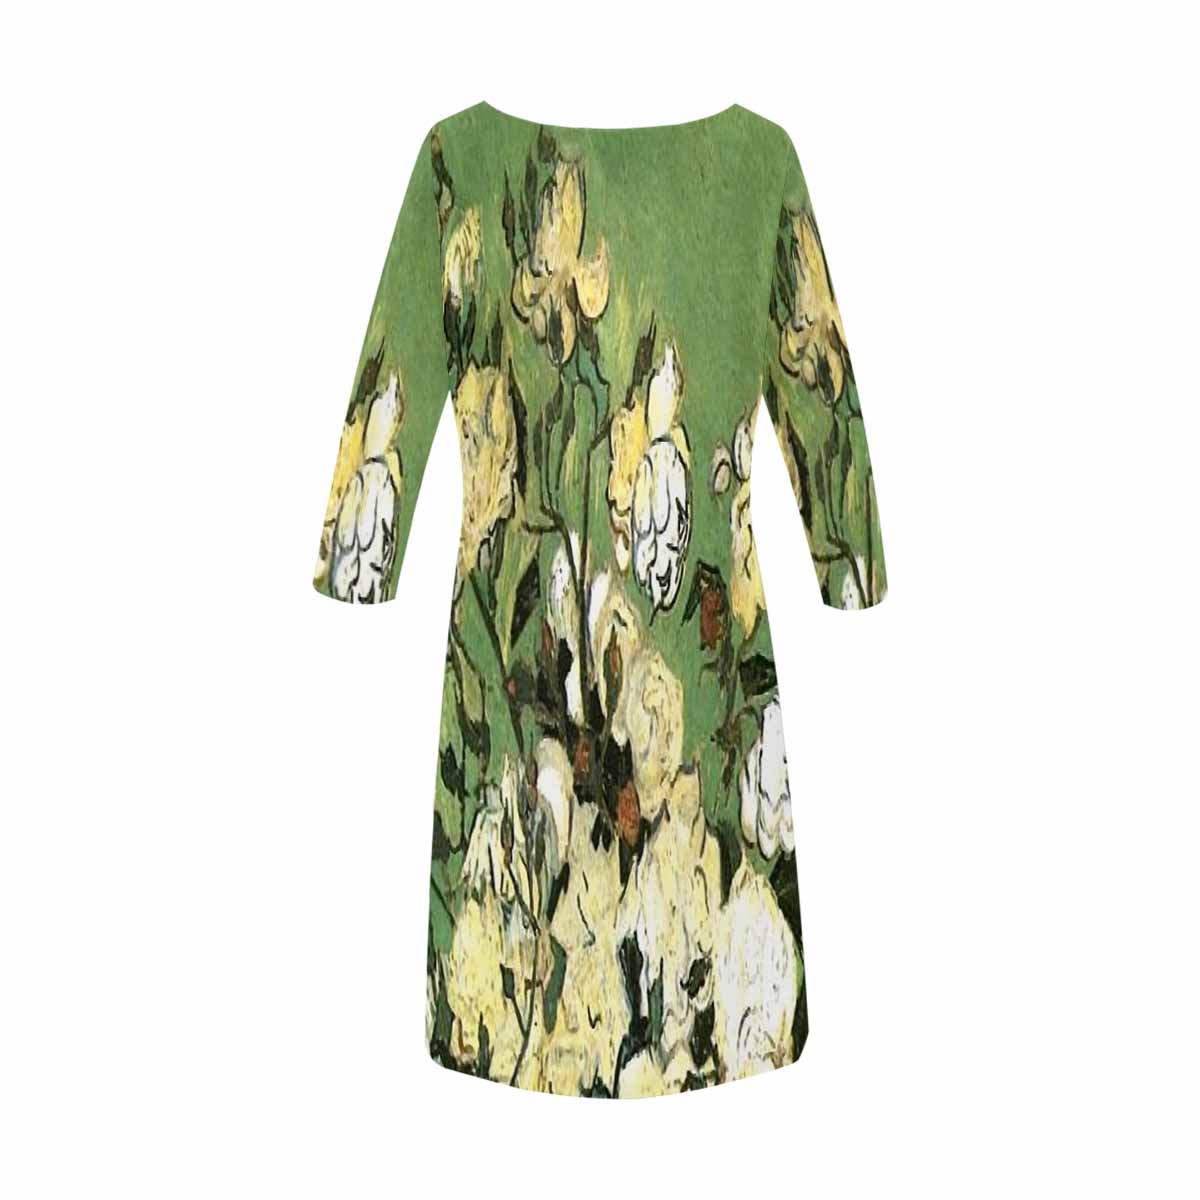 Vintage floral loose dress, model D29532 Design 55